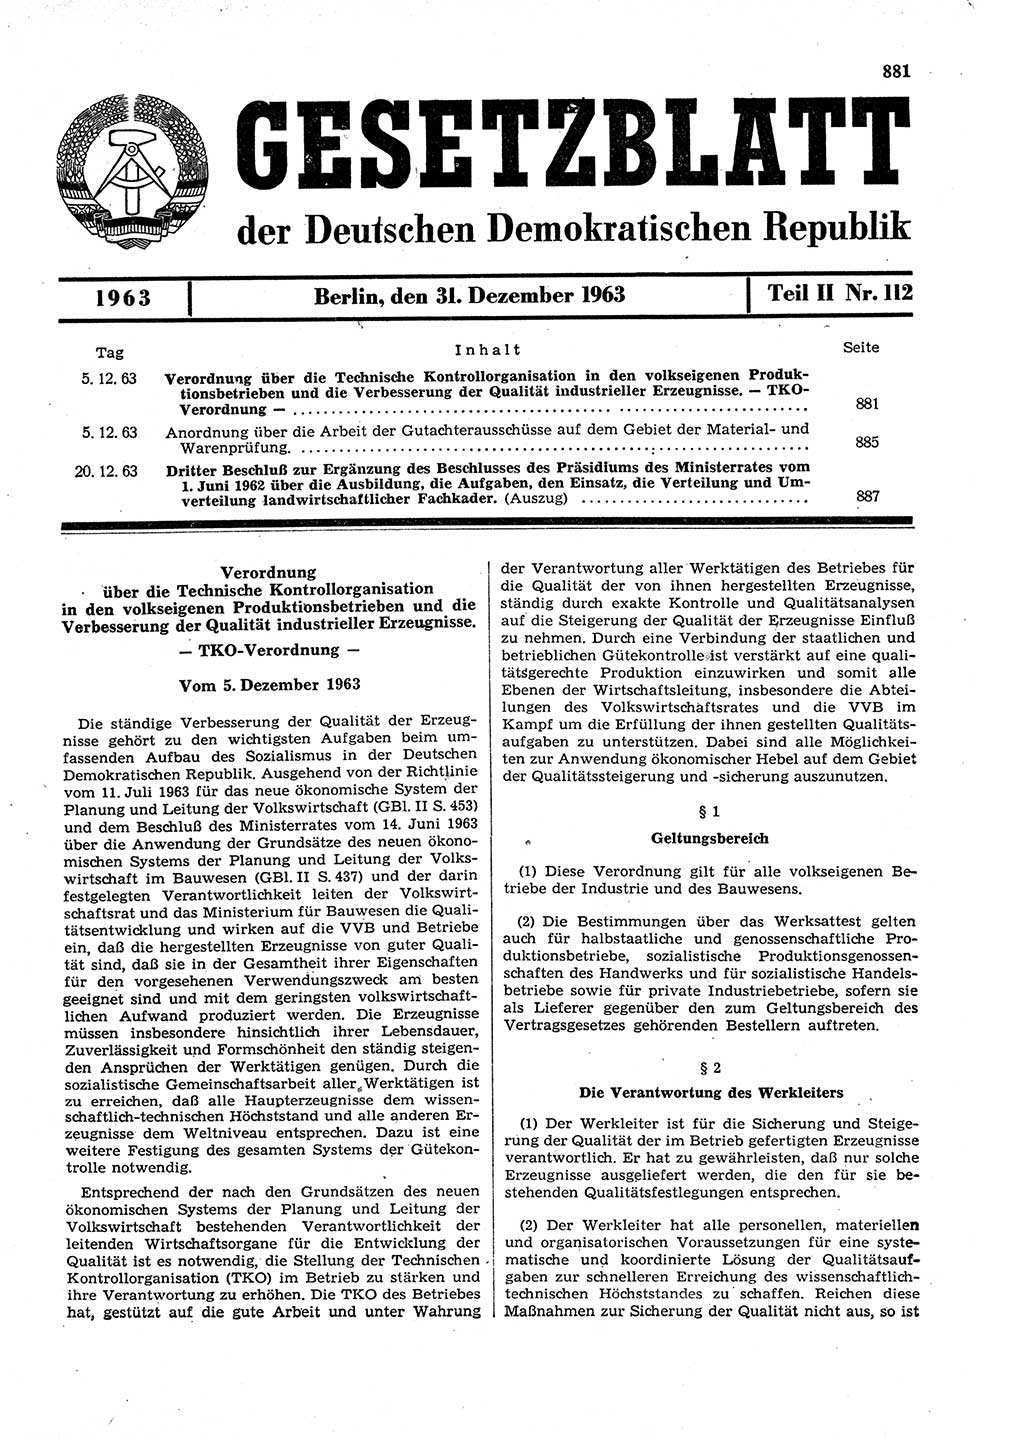 Gesetzblatt (GBl.) der Deutschen Demokratischen Republik (DDR) Teil ⅠⅠ 1963, Seite 881 (GBl. DDR ⅠⅠ 1963, S. 881)